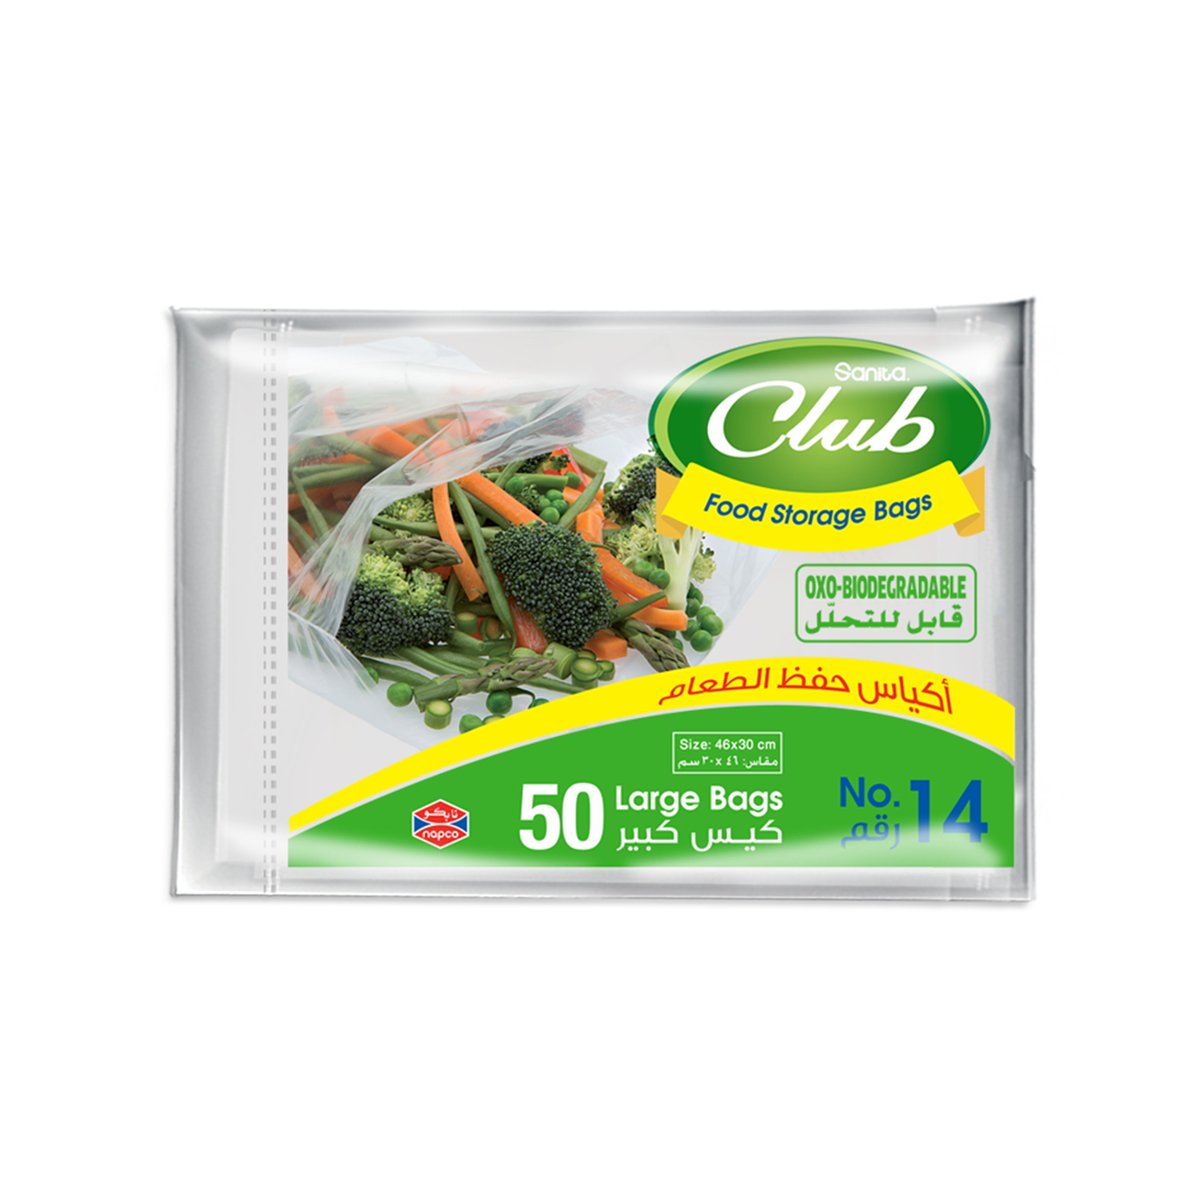 Sanita Club Food Storage Bags Biodegradable #14 Size 46 x 30cm 50pcs